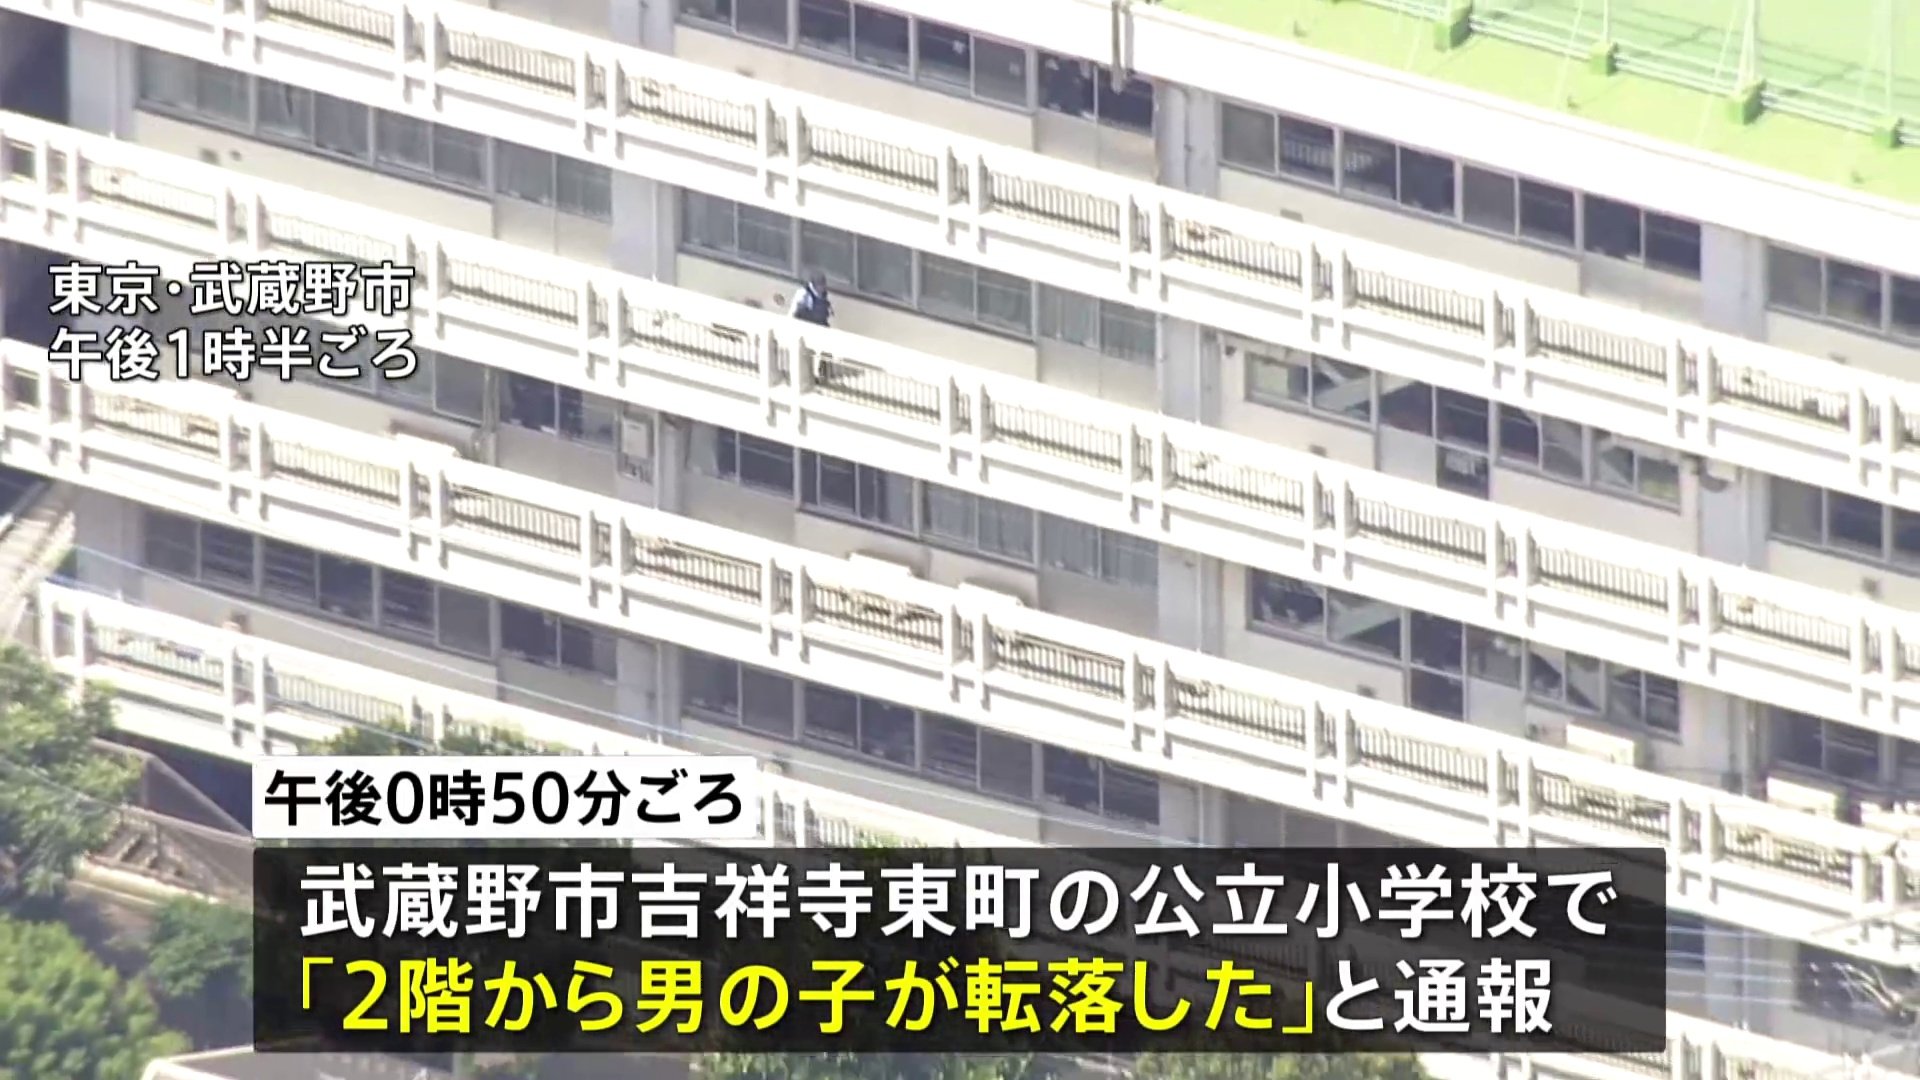 【速報】東京・武蔵野市の小学校で2階ベランダから10代の男子生徒が転落か　意識不明の重体という情報も　